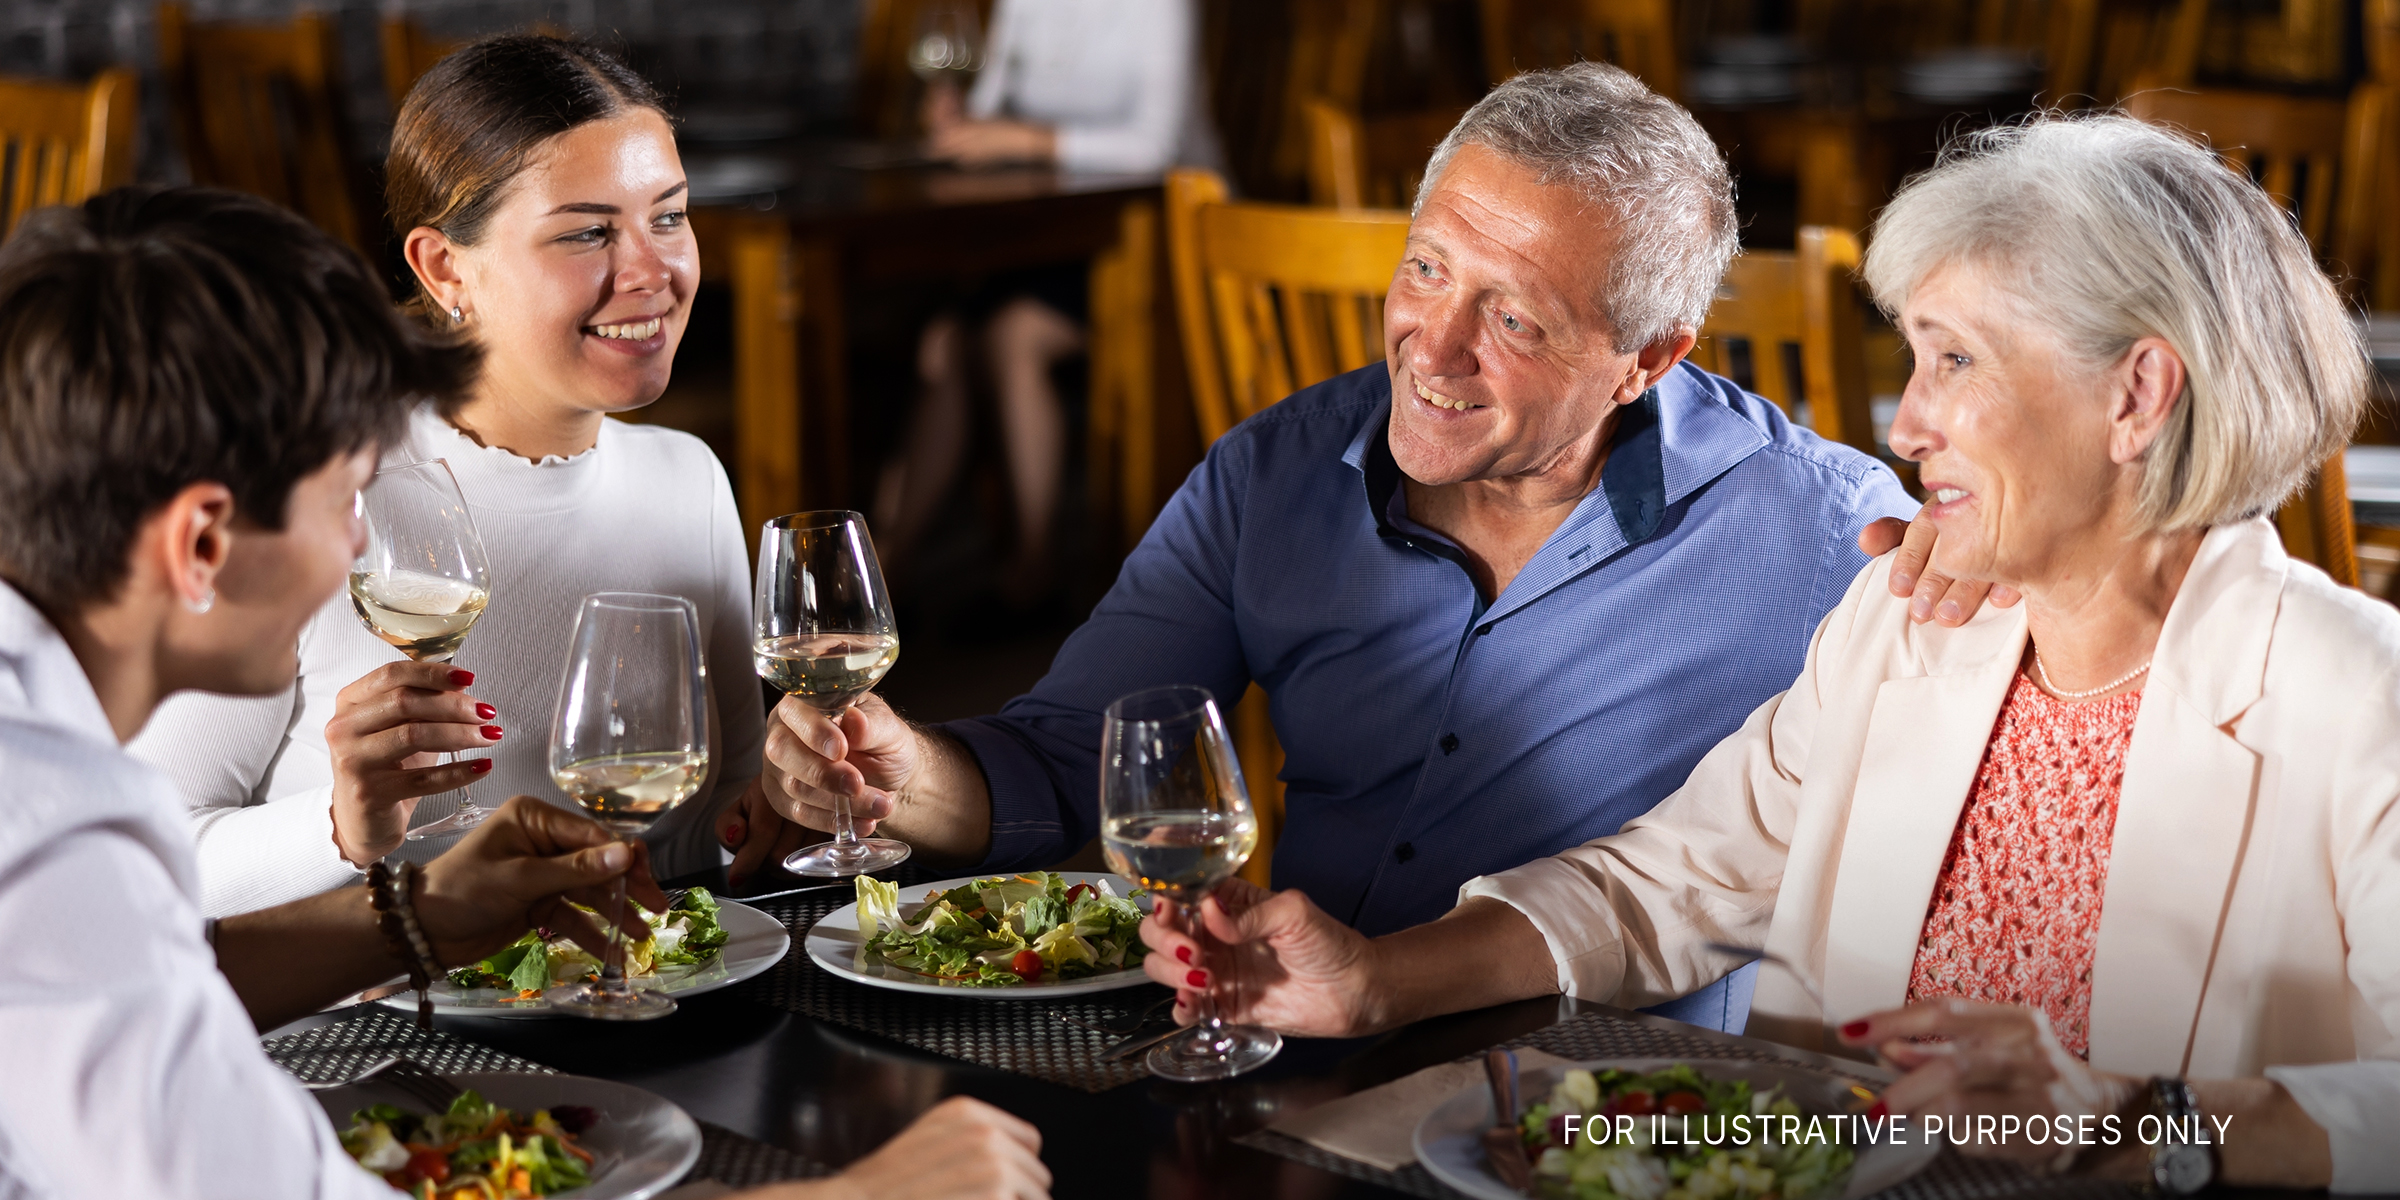 Zwei Paare beim Essen | Quelle: Shutterstock